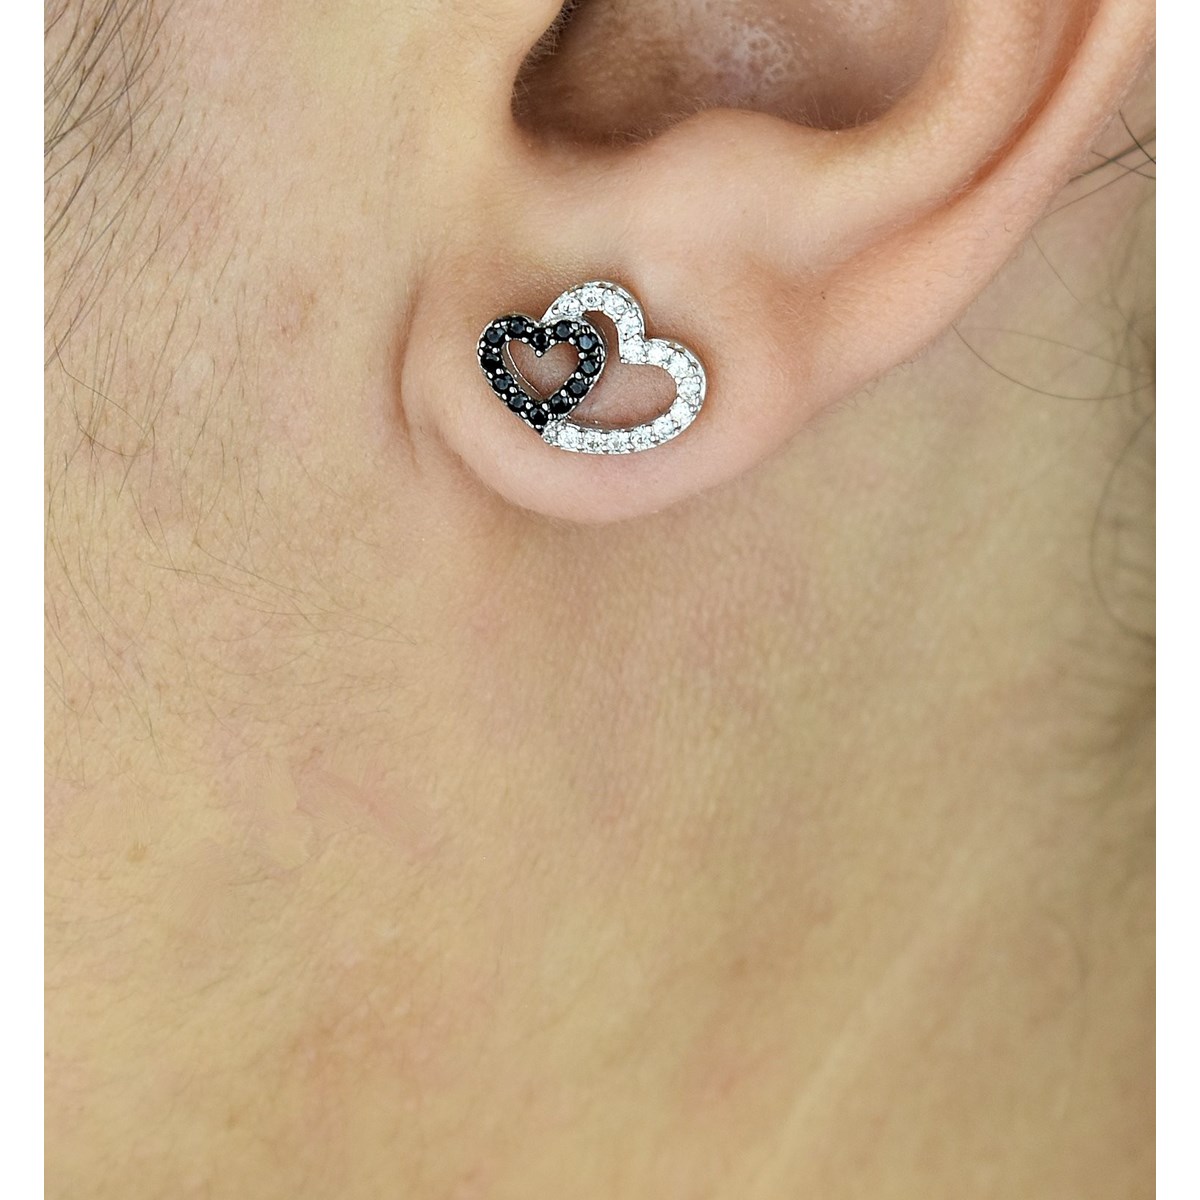 Boucles d'oreilles 2 coeurs oxyde de zirconium blancs et noirs Argent 925 Rhodié - vue 2